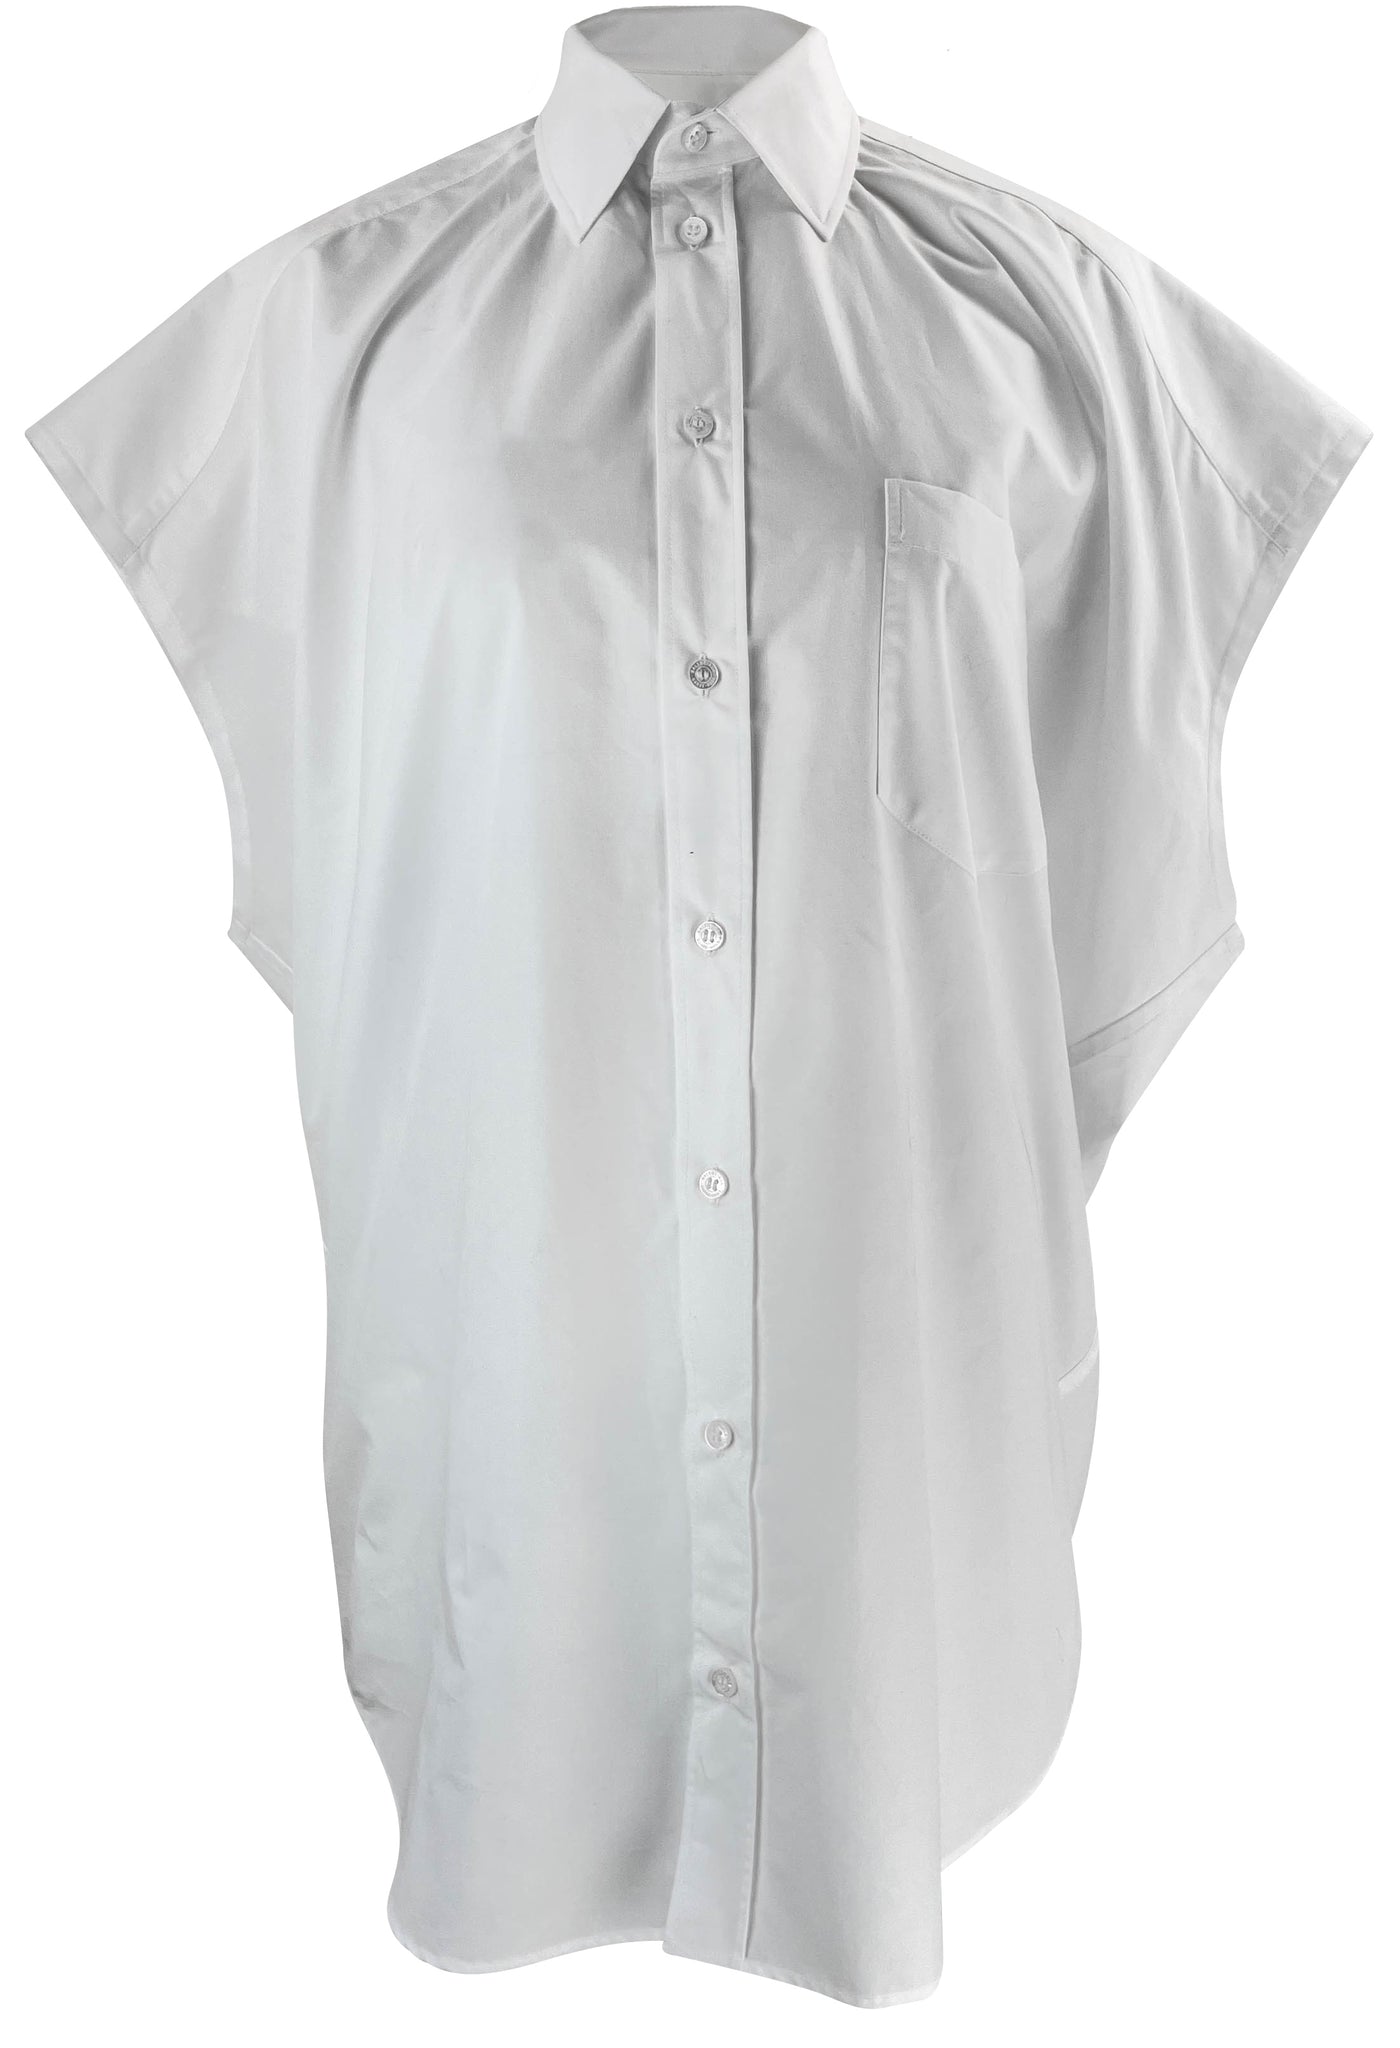 Balenciaga Button-Up Sleeveless Oversized Shirt in White - Discounts on Balenciaga at UAL